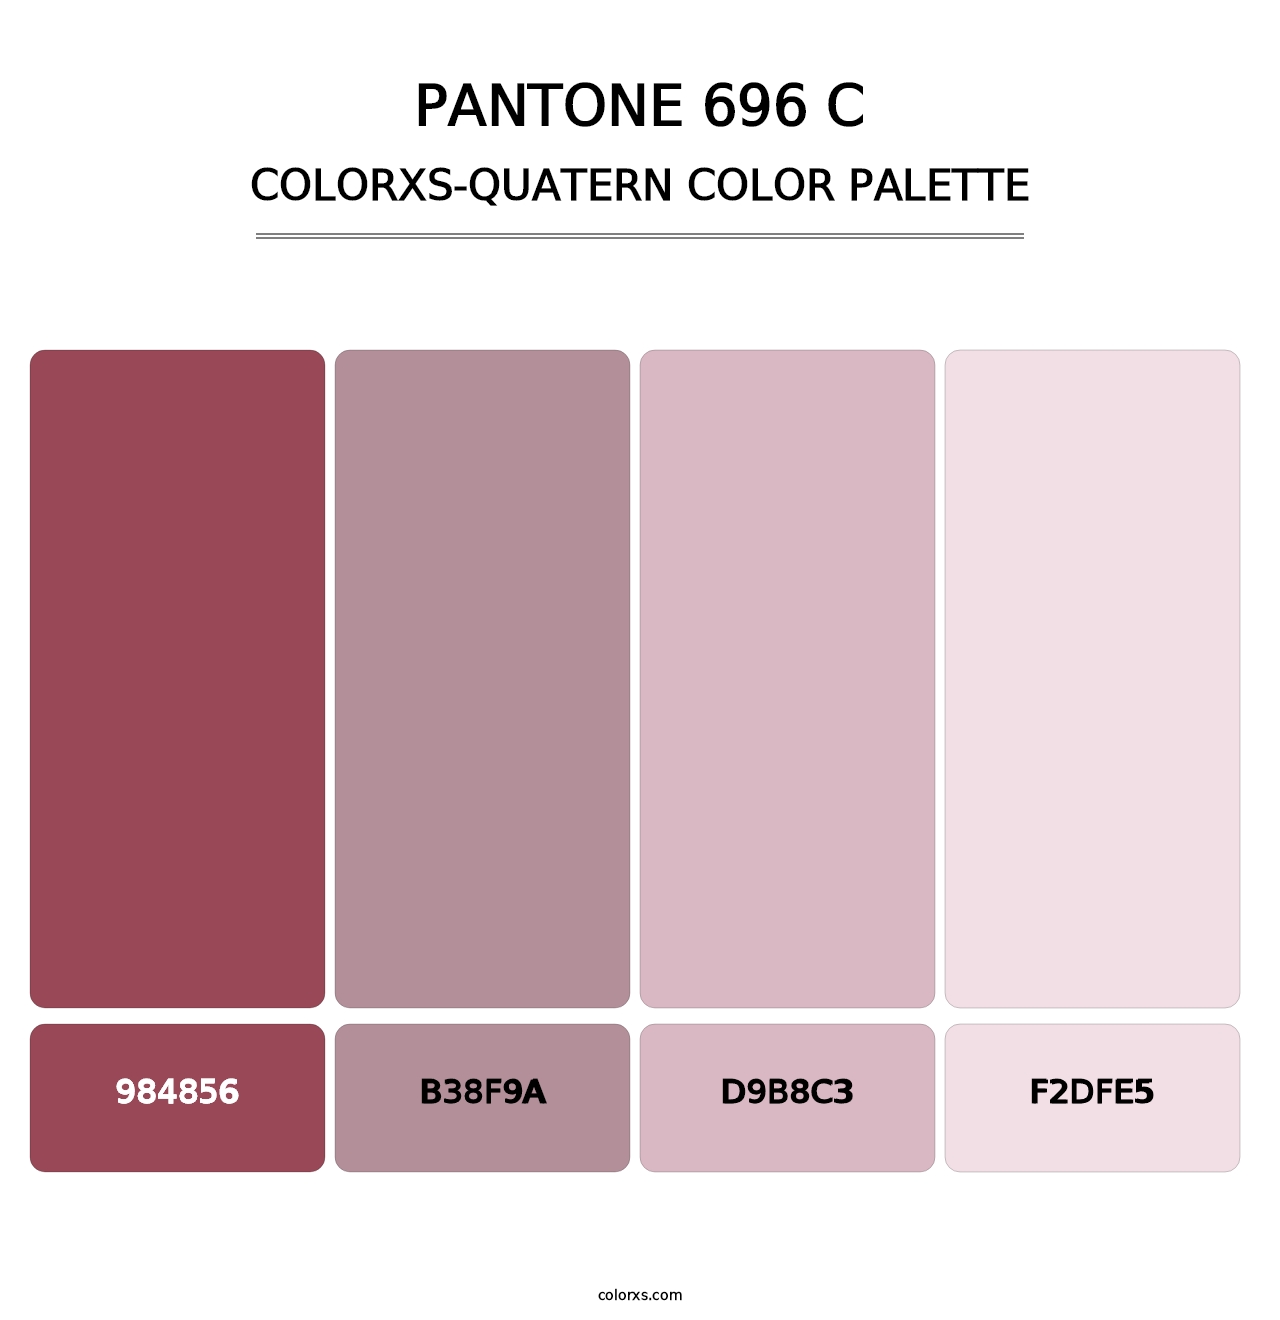 PANTONE 696 C - Colorxs Quatern Palette